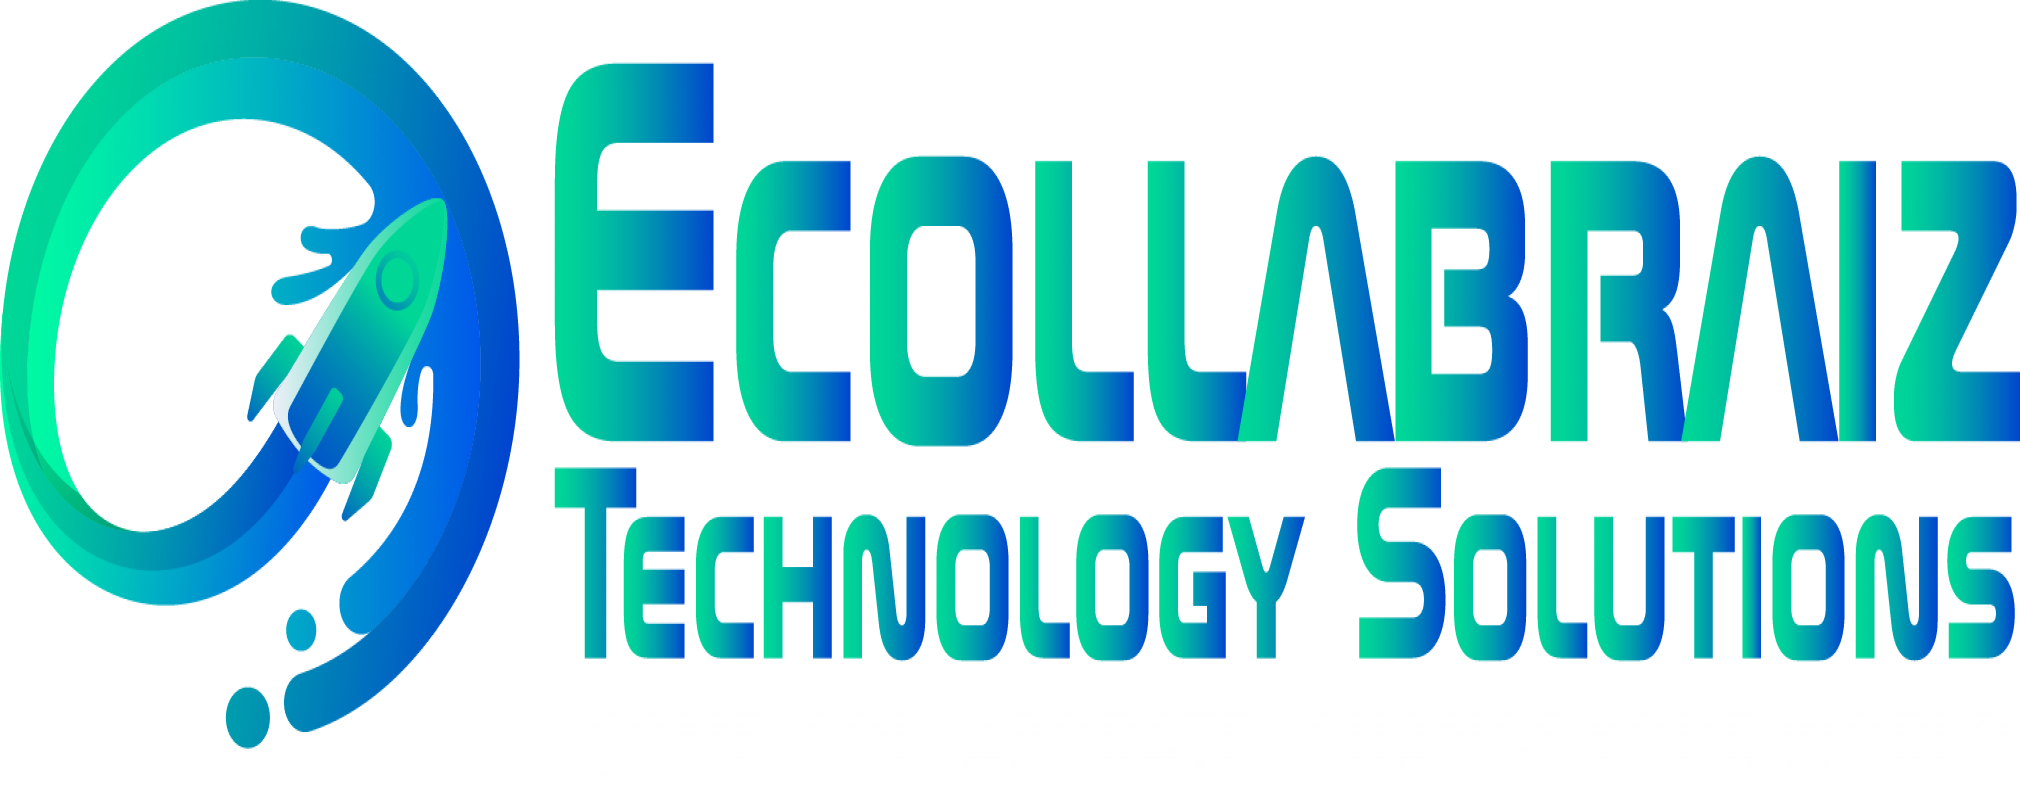 Ecollabraiz Technology Solutions